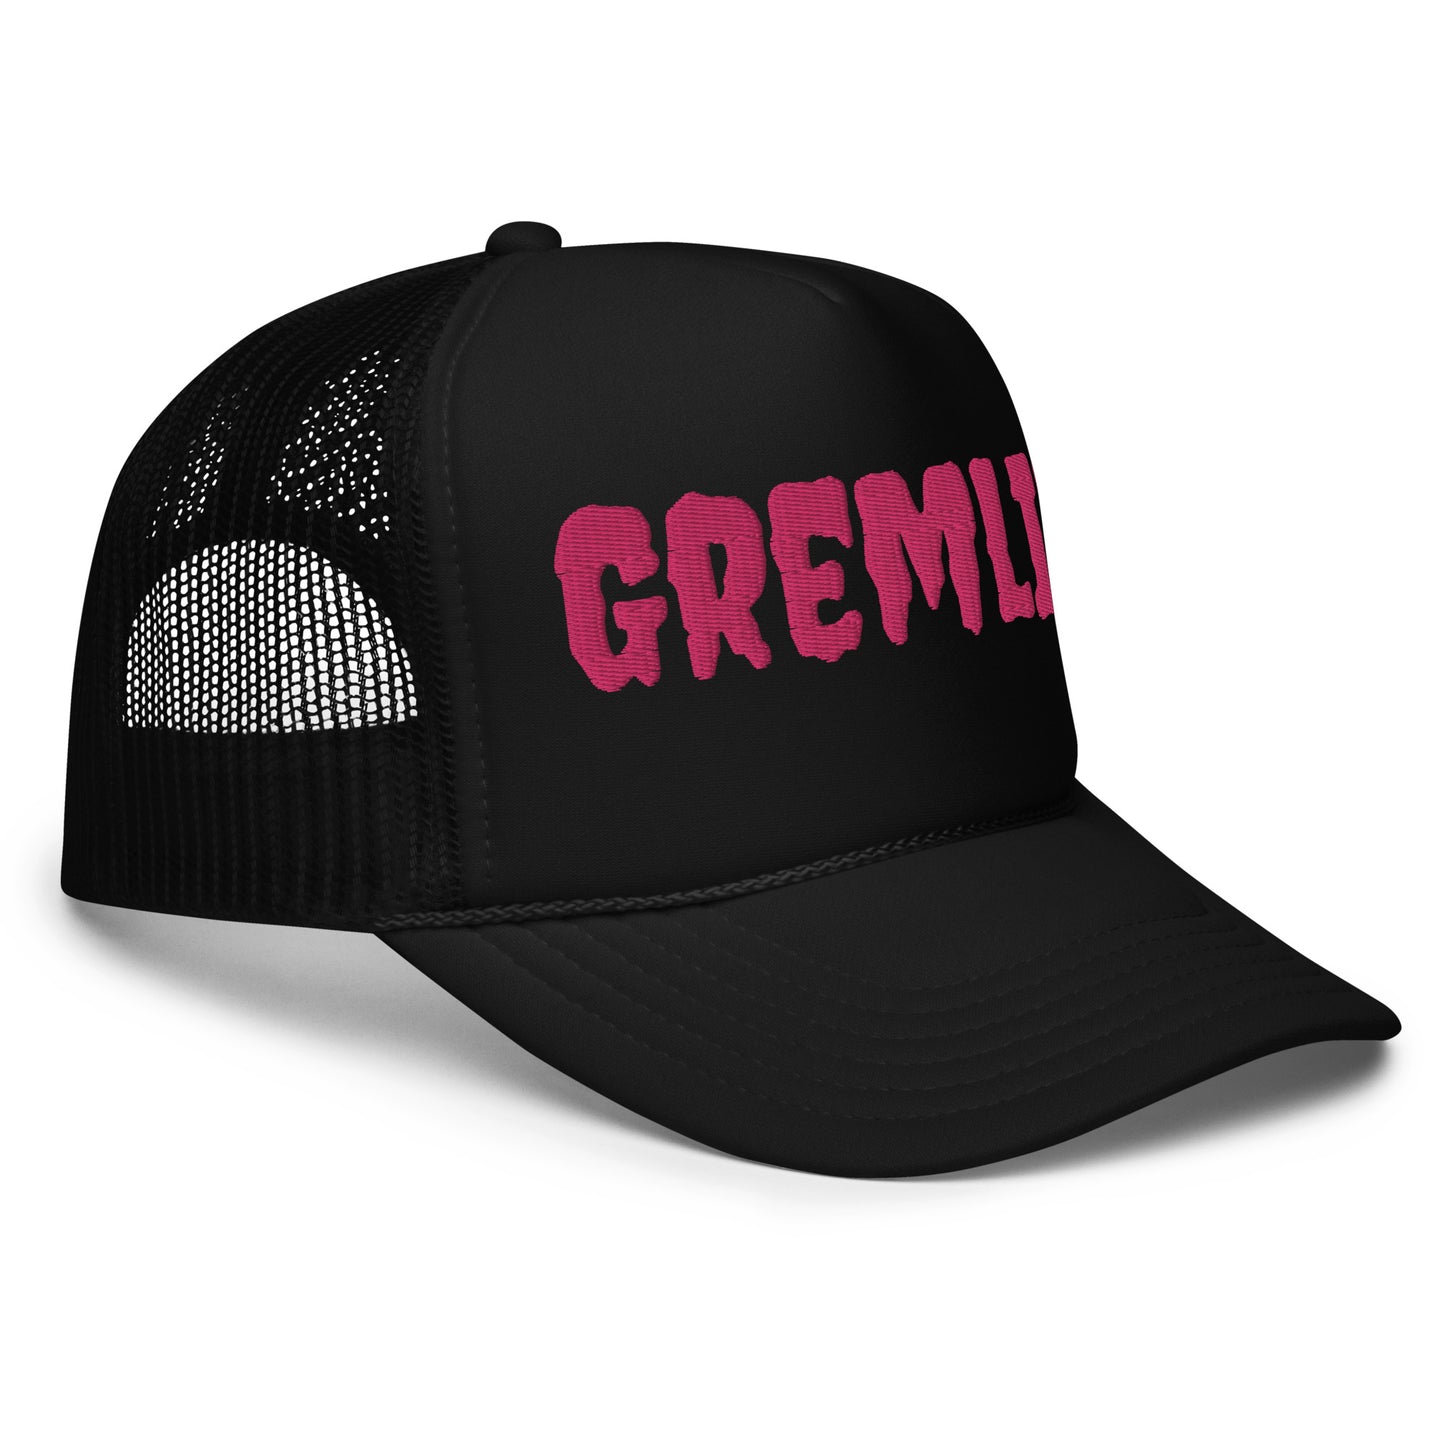 GREMLIN FOAM TRUCKER HAT